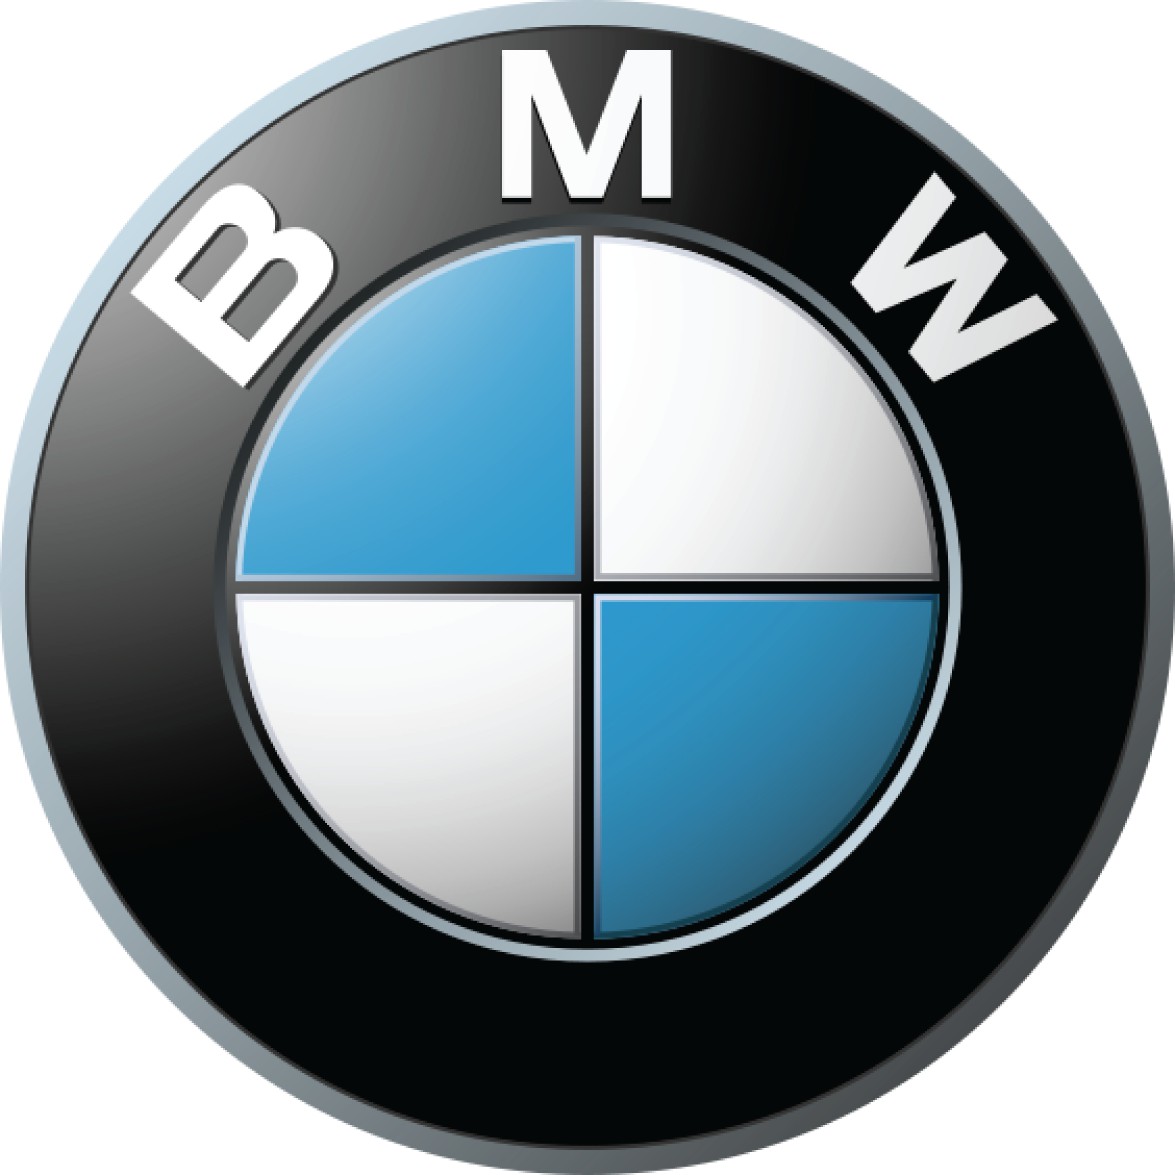 Turbolader BMW 1er, Turbolader BMW 2er, Turbolader BMW 3er, Turbolader BMW 5er ,Turbolader BMW 6er, Turbolader BMW 7er, Turbolader BMW X1, Turbolader BMW X2, Turbolader BMW X3, Turbolader BMW X4, Turbolader BMW X5, Turbolader BMW X6, Turbolader BMW M2, Turbolader BMW M3, Turbolader BMW M4, Turbolader BMW M5, Turbolader BMW M6, Turbolader BMW i3, Turbolader BMW i5, Turbolader BMW i8